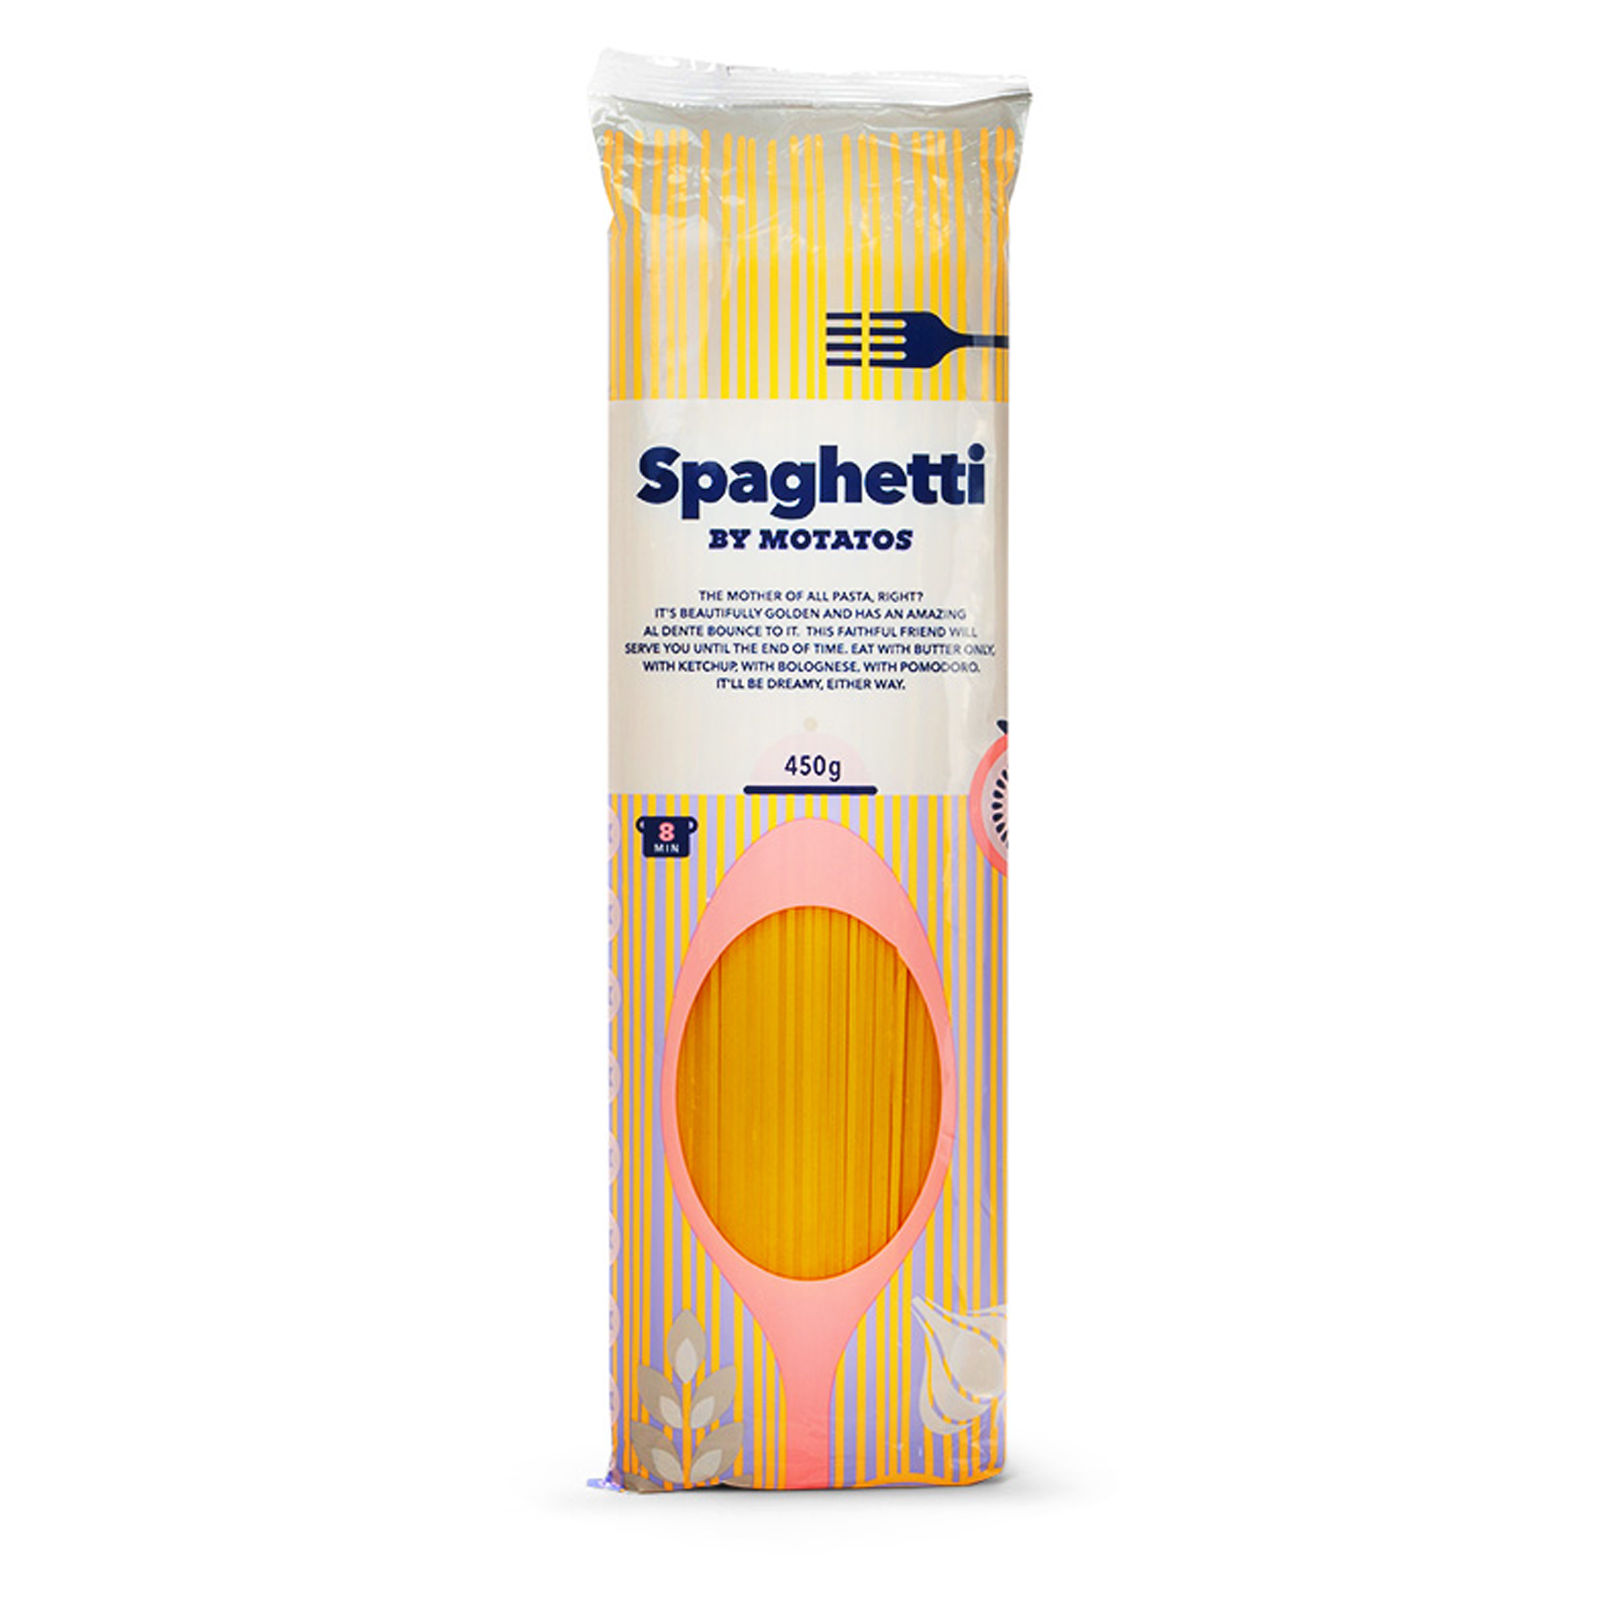 By Motatos Gratis zu deiner ersten Bestellung: Spaghetti by Motatos